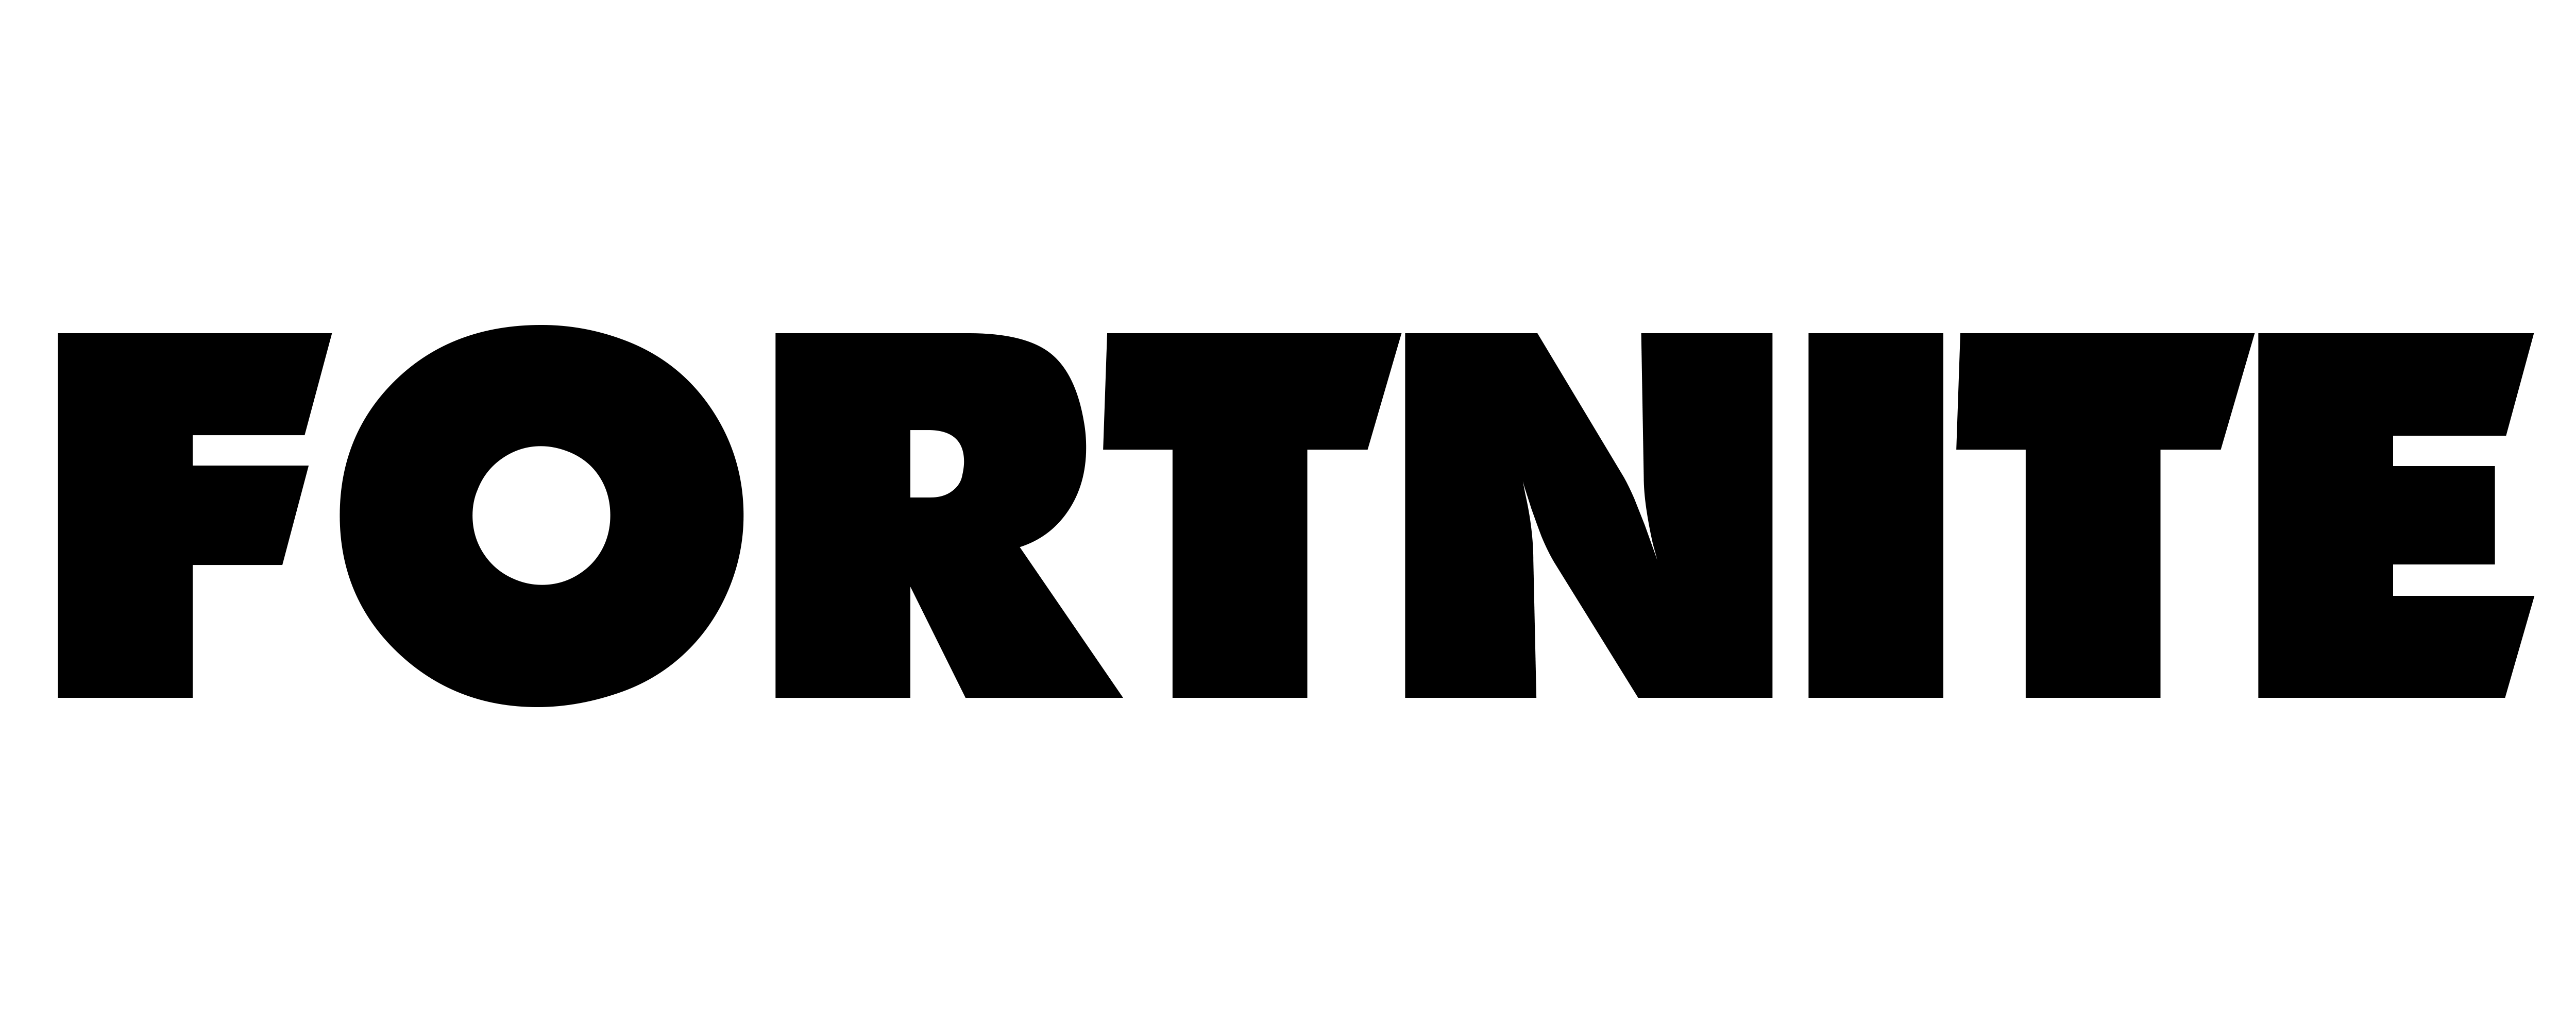 Fortnite Battle Royale Logo PNG Background Image | PNG Mart